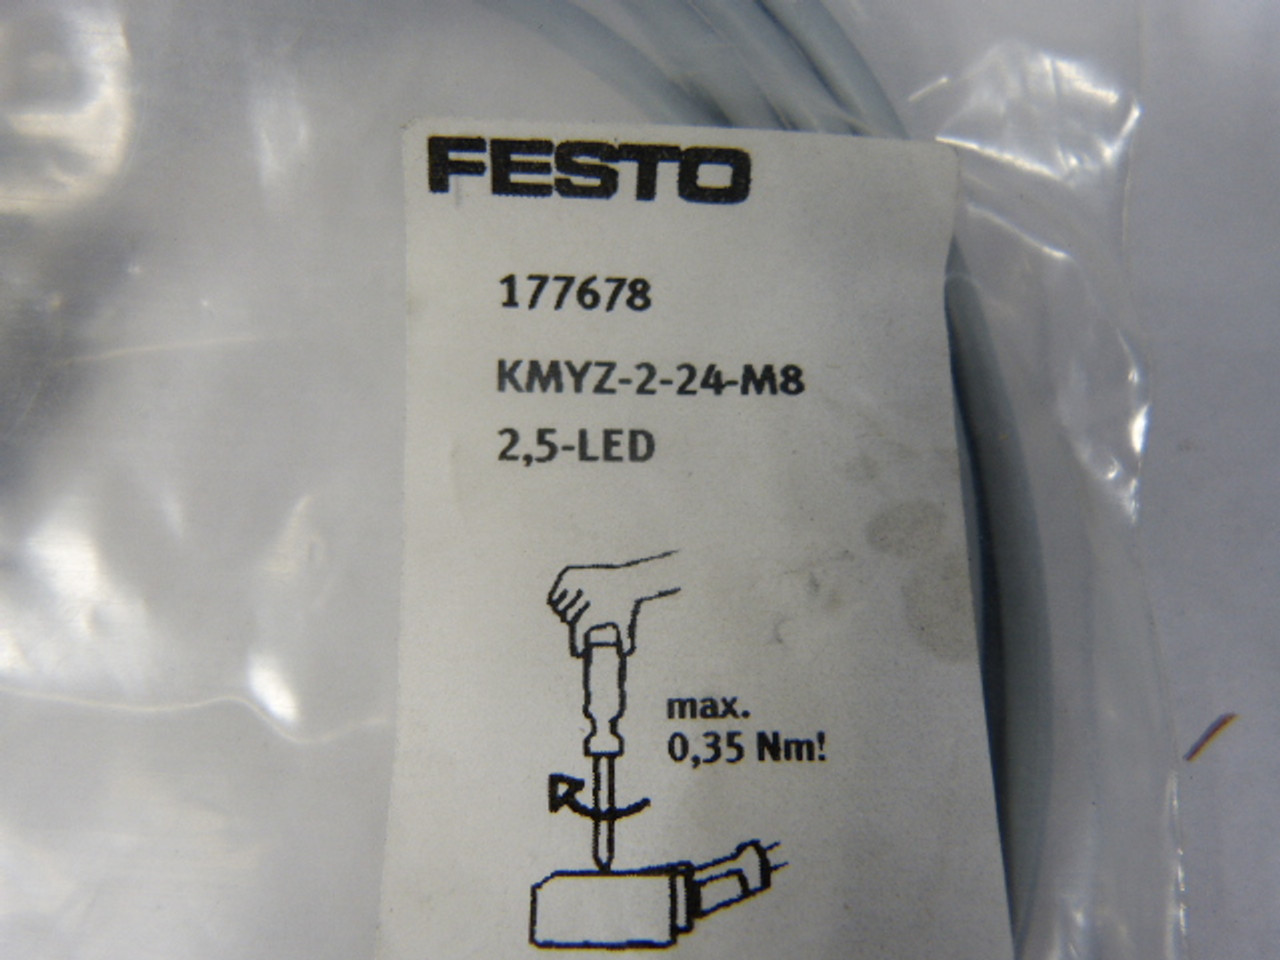 Festo KMYZ-2-24-M8-2,5-LED 177678 Connecting Cable with Plug Socket 2.5m NWB